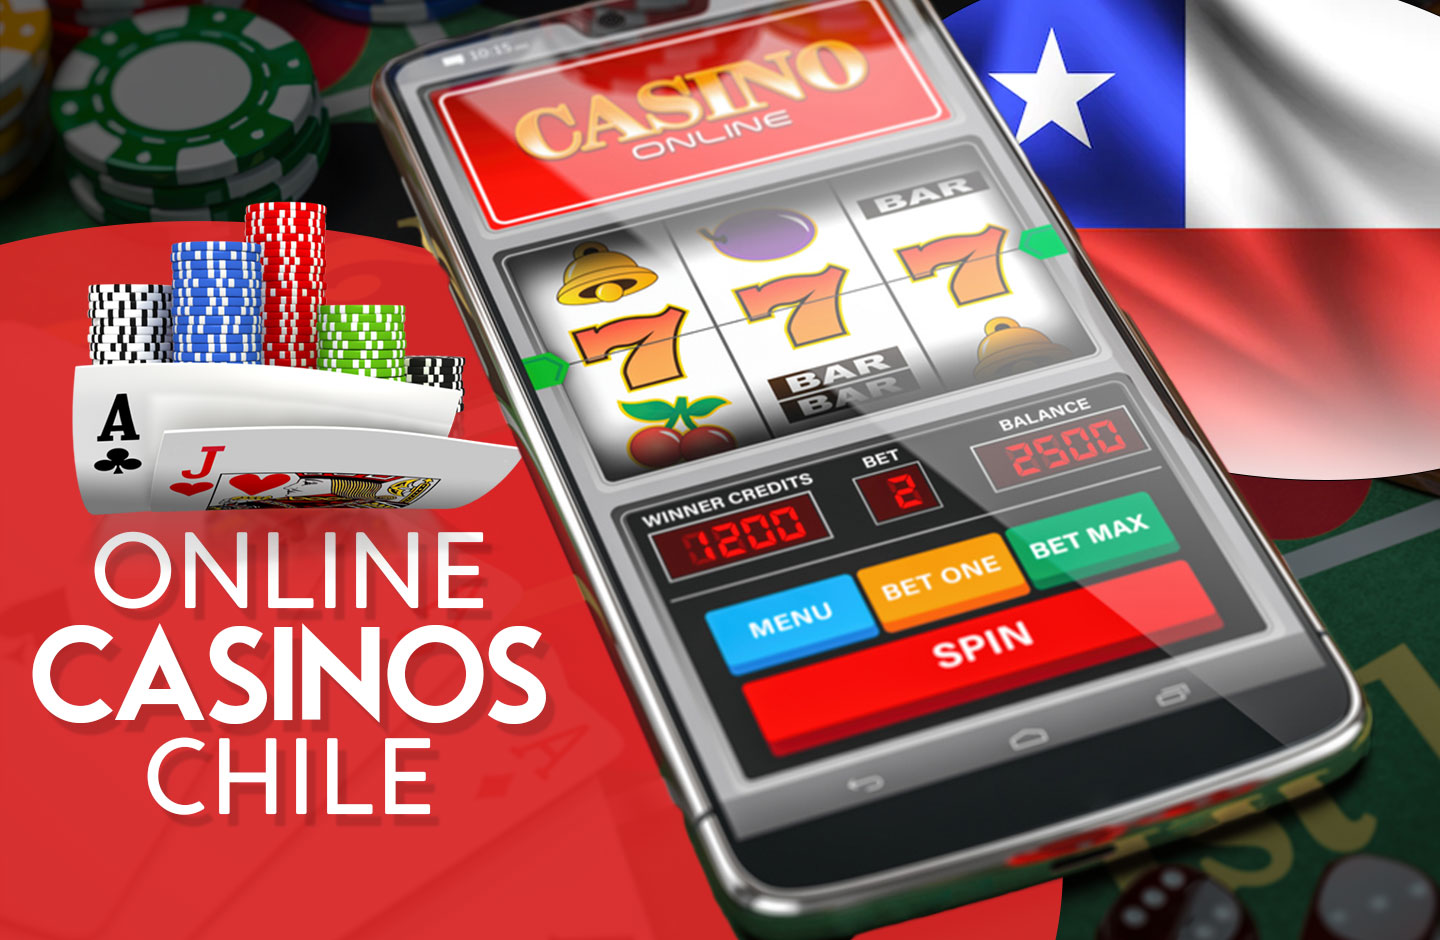 Domine su casino online Chile en 5 minutos al día